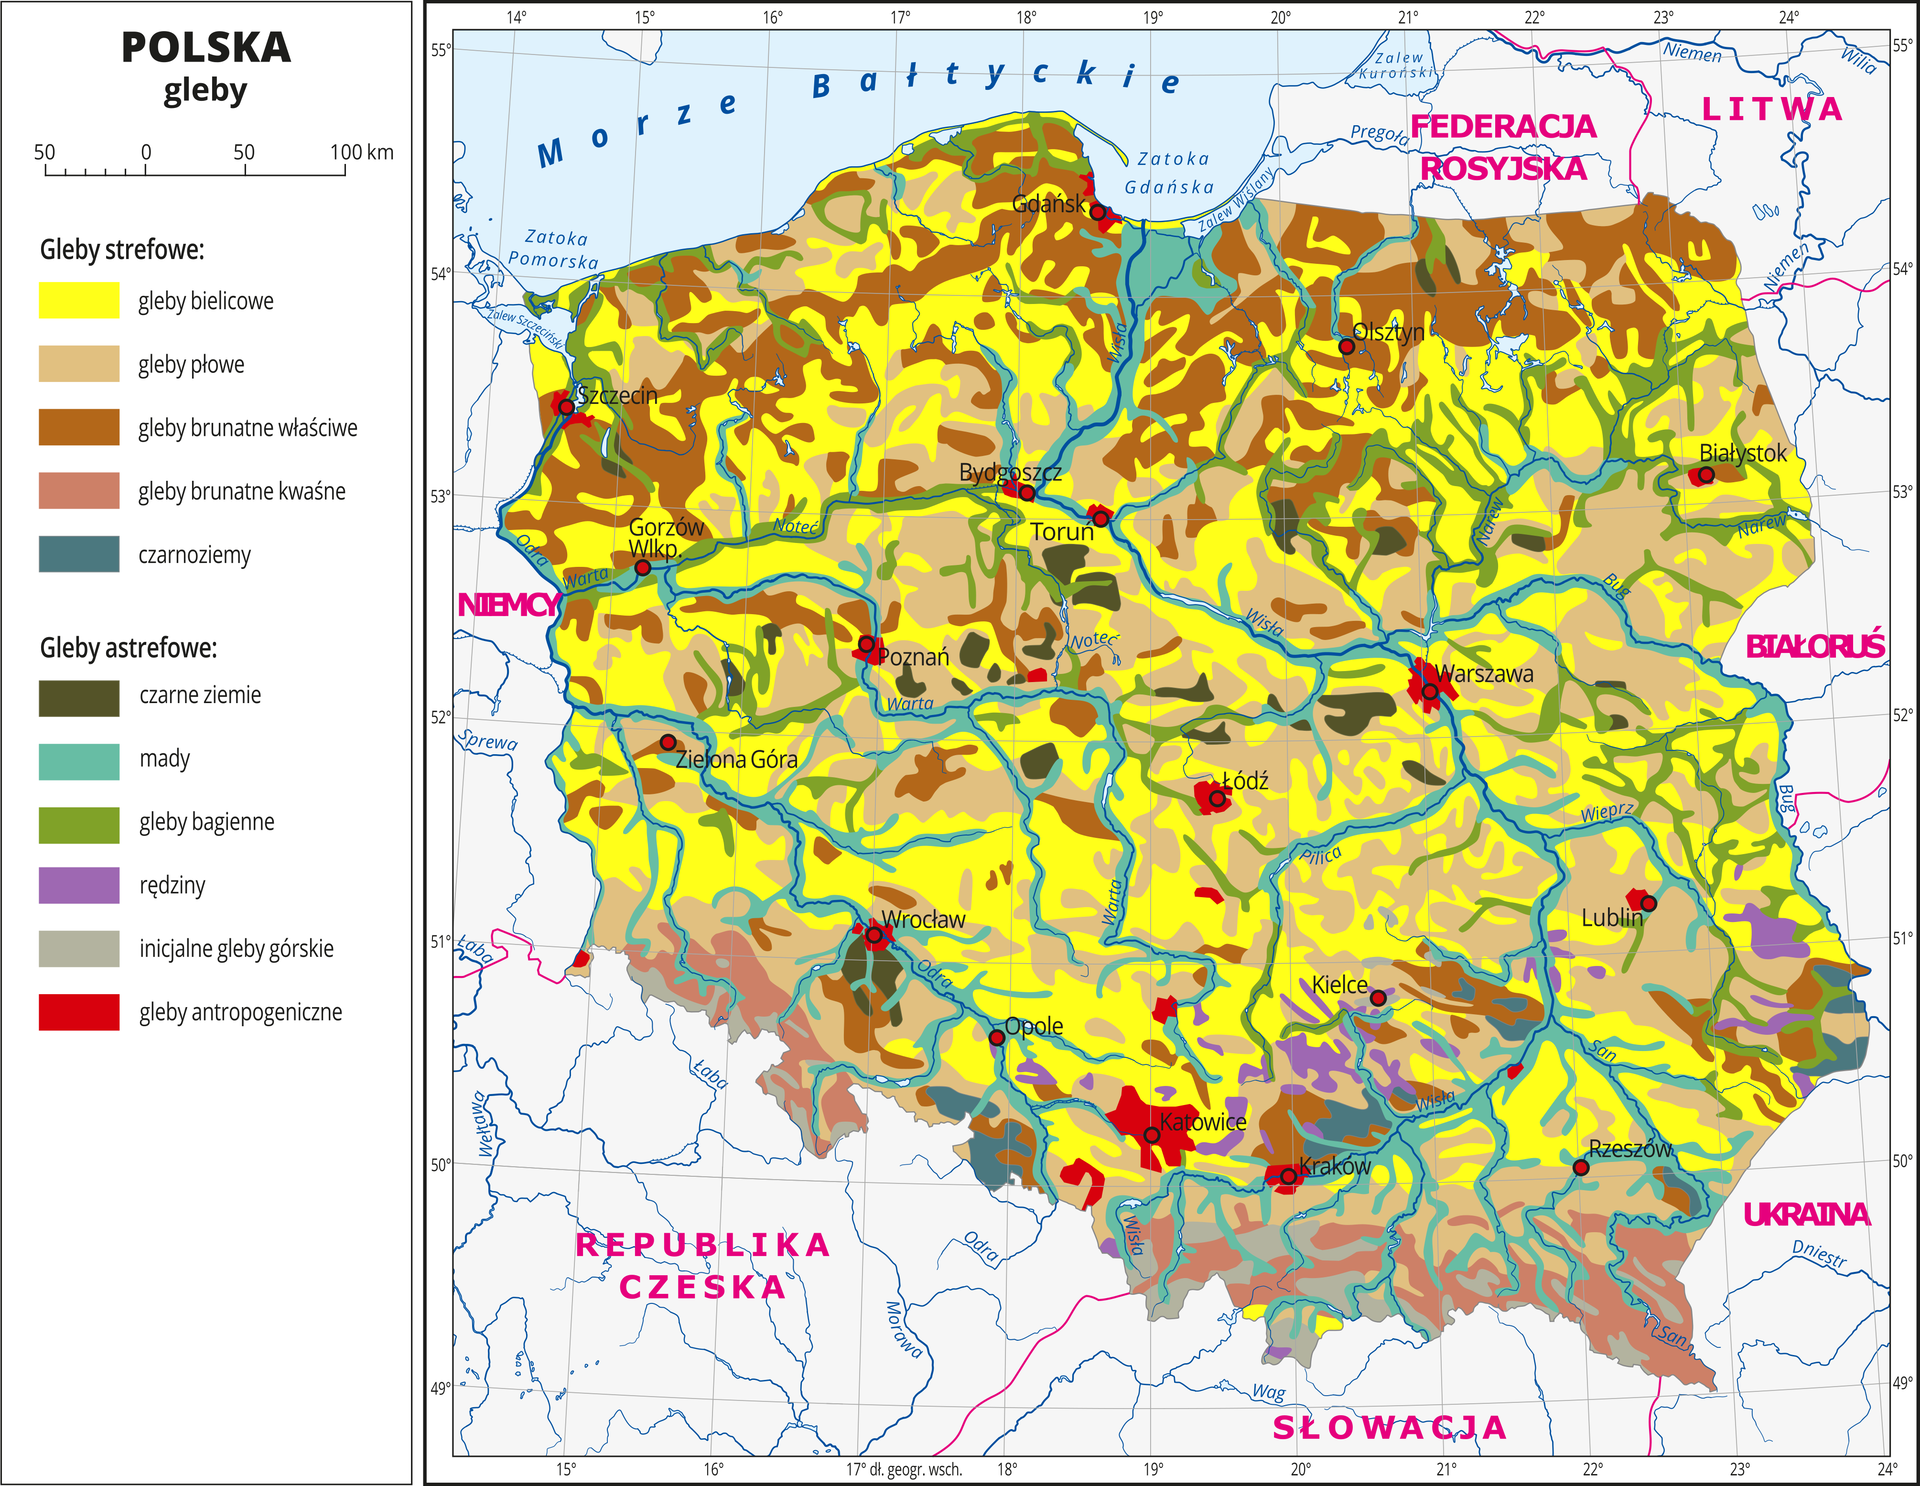 Ilustracja przedstawia mapę Polski . Na mapie kolorami zaznaczono typy gleb. Centralną część Polski zajmują gleby bielicowe oznaczone kolorem żółtym i gleby płowe oznaczone kolorem beżowym. Na północy przeważają gleby brunatne właściwe i kwaśne oznaczone dwoma odcieniami koloru brązowego. Wzdłuż rzek występują mady (kolor turkusowy) i gleby bagienne (kolor zielony). Czerwonymi kropkami zaznaczono miasta wojewódzkie. Opisano rzeki. Po lewej stronie mapy w legendzie umieszczono w pionie jedenaście kolorowych prostokątów, które opisano nazwami gleb. Wydzielono pięć rodzajów gleb strefowych: bielicowe, płowe, brunatne właściwe, brunatne kwaśne i czarnoziemy oraz sześć rodzajów gleb astrefowych: czarne ziemie, mady, gleby bagienne, rędziny, inicjalne gleby górskie i gleby antropogeniczne. Gleby astrefowe rozmieszczone są nierównomiernie, gleby antropogeniczne występują wokół miast.